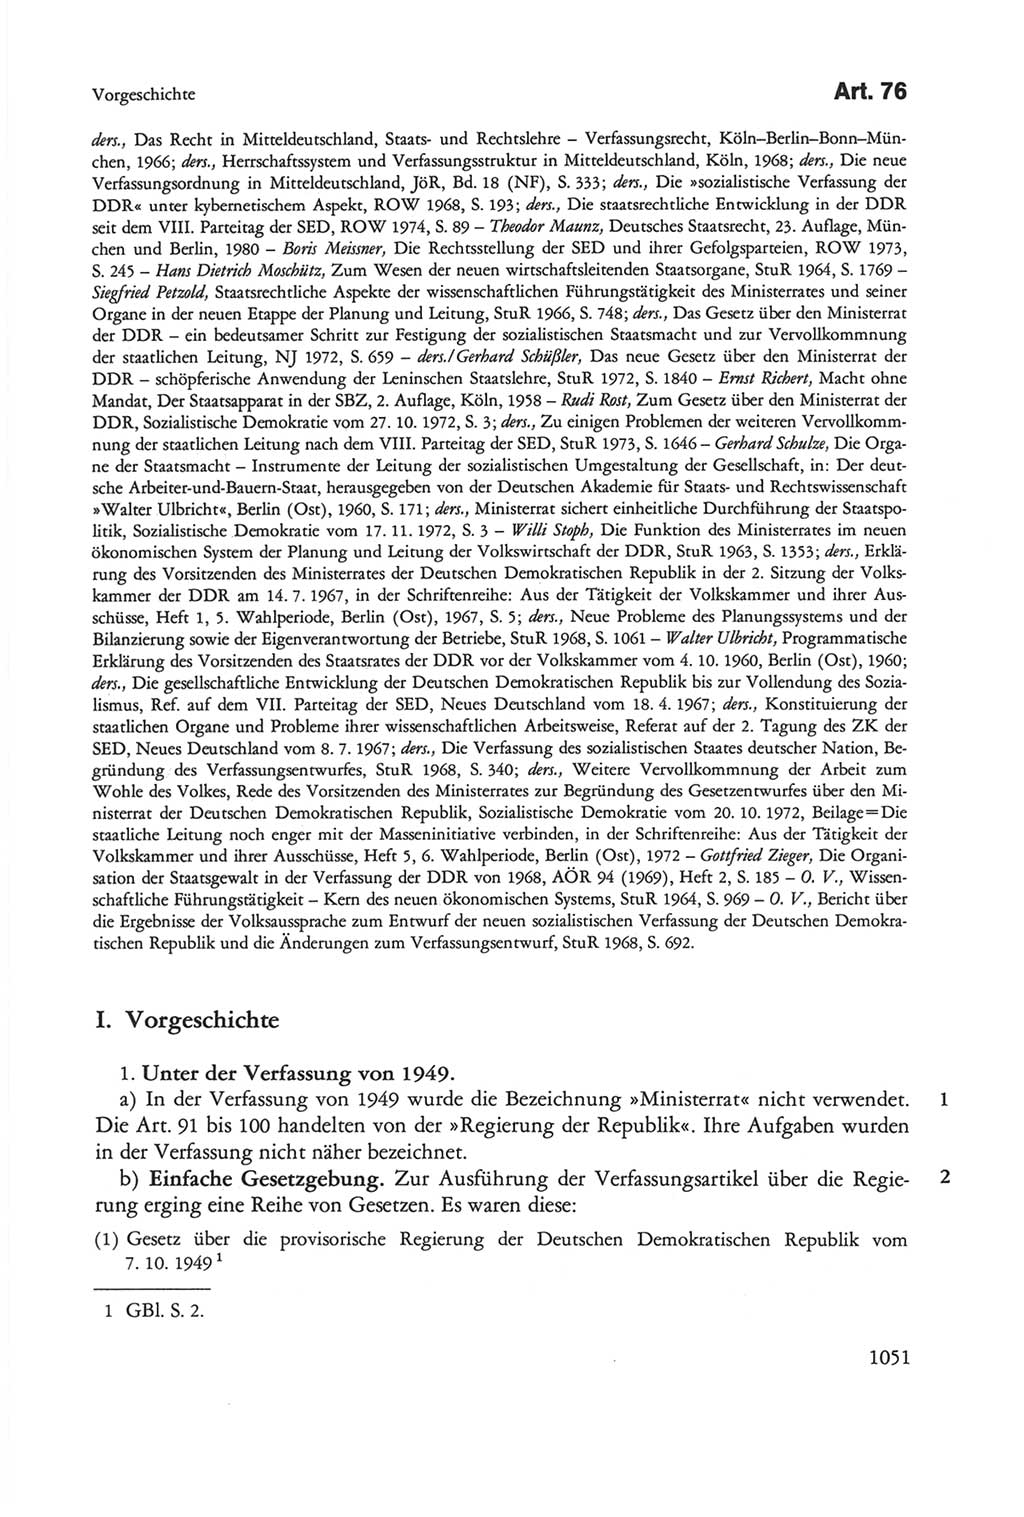 Die sozialistische Verfassung der Deutschen Demokratischen Republik (DDR), Kommentar mit einem Nachtrag 1997, Seite 1051 (Soz. Verf. DDR Komm. Nachtr. 1997, S. 1051)